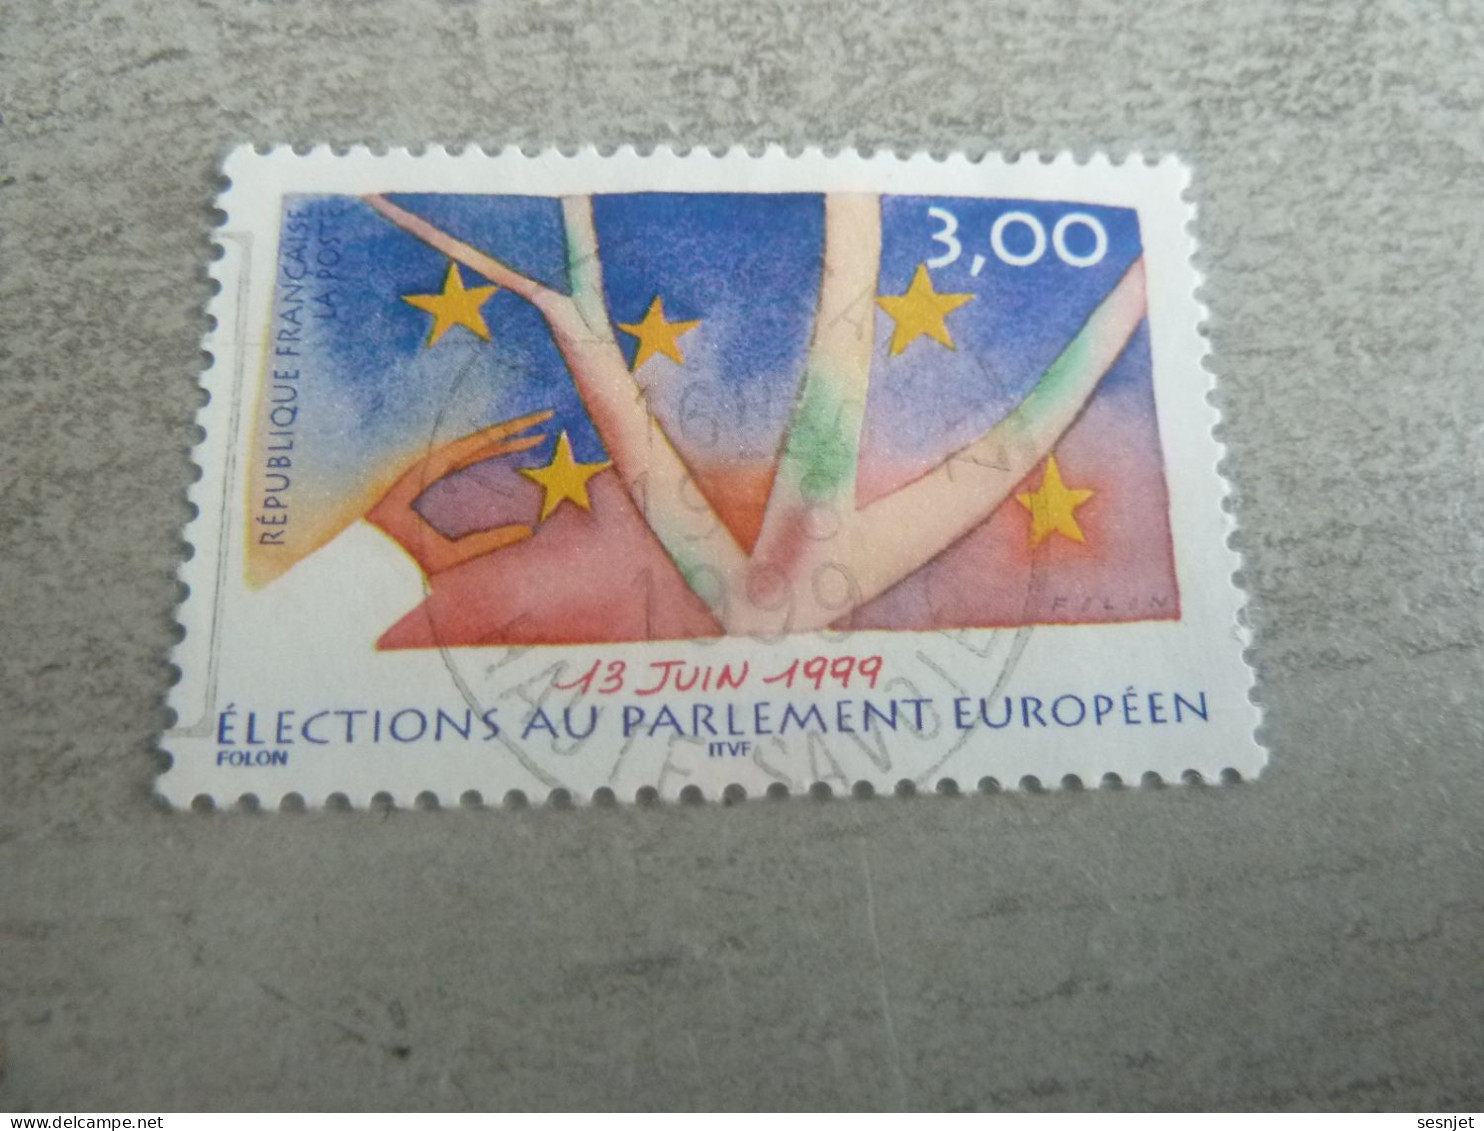 Elections Au Parlement Européen - 3f. - Yt 3237 - Multicolore - Oblitéré - Année 1999 - - Used Stamps